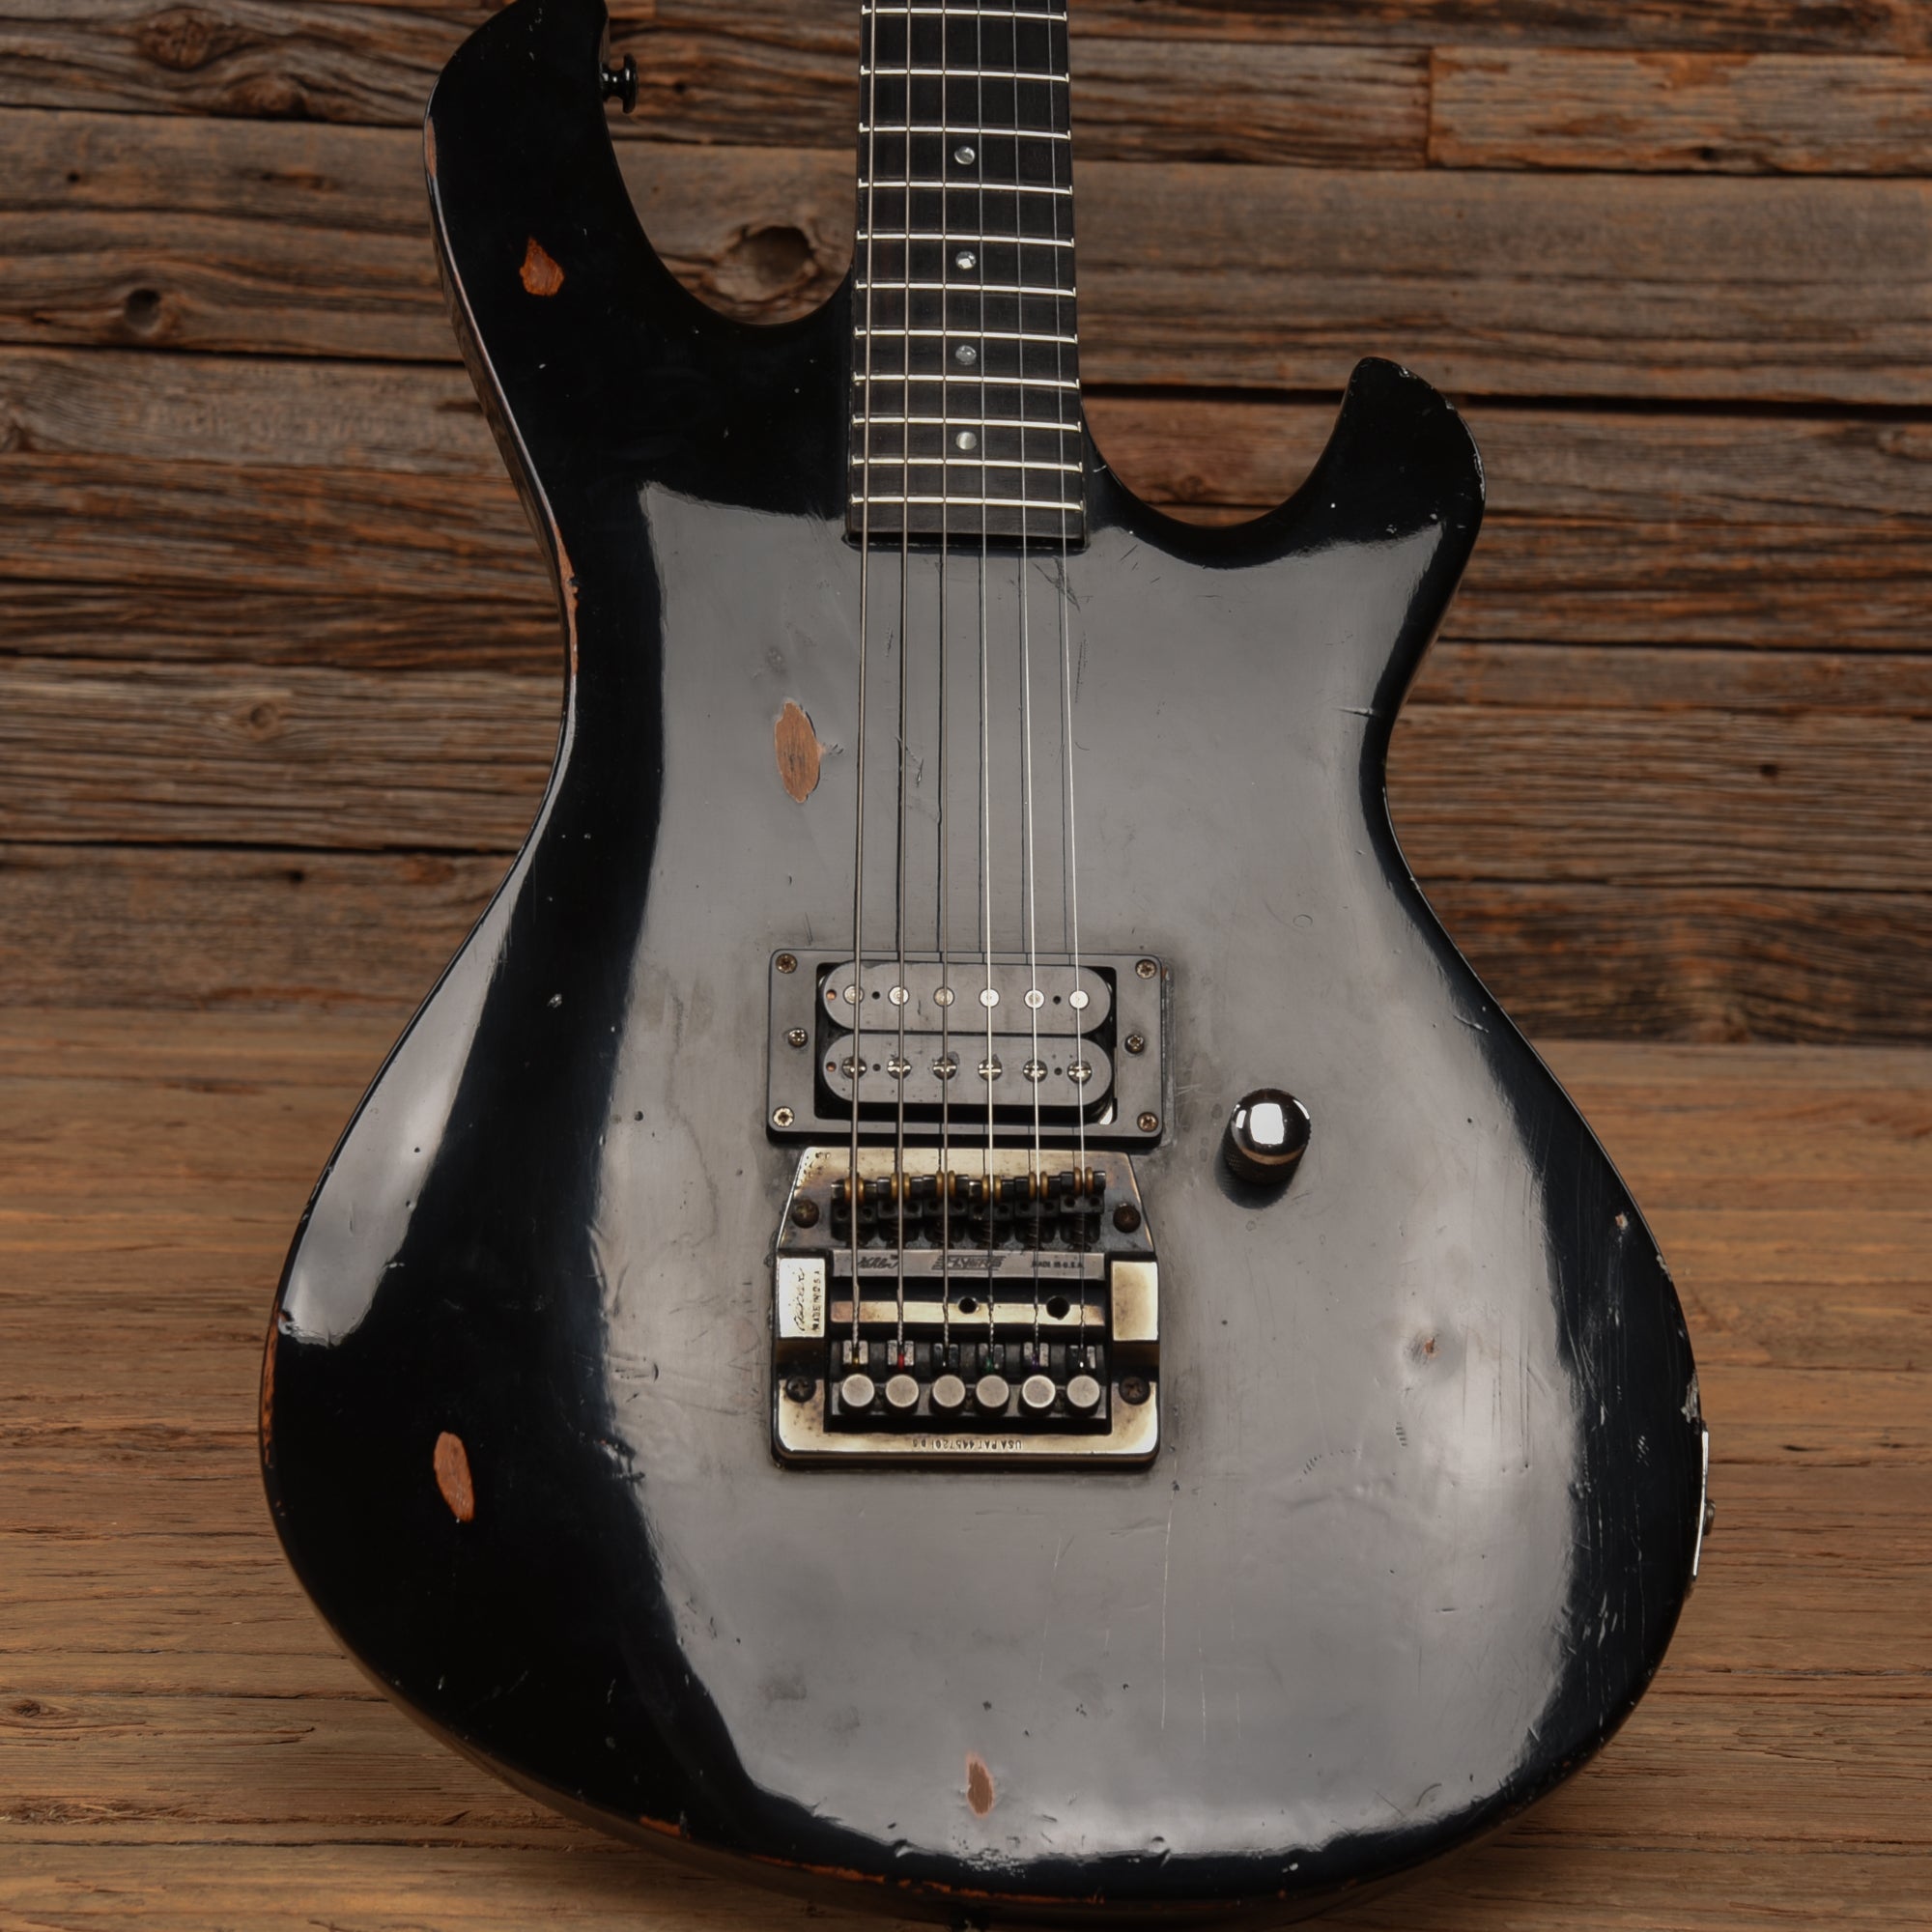 Gibson SR-71 Black 1986